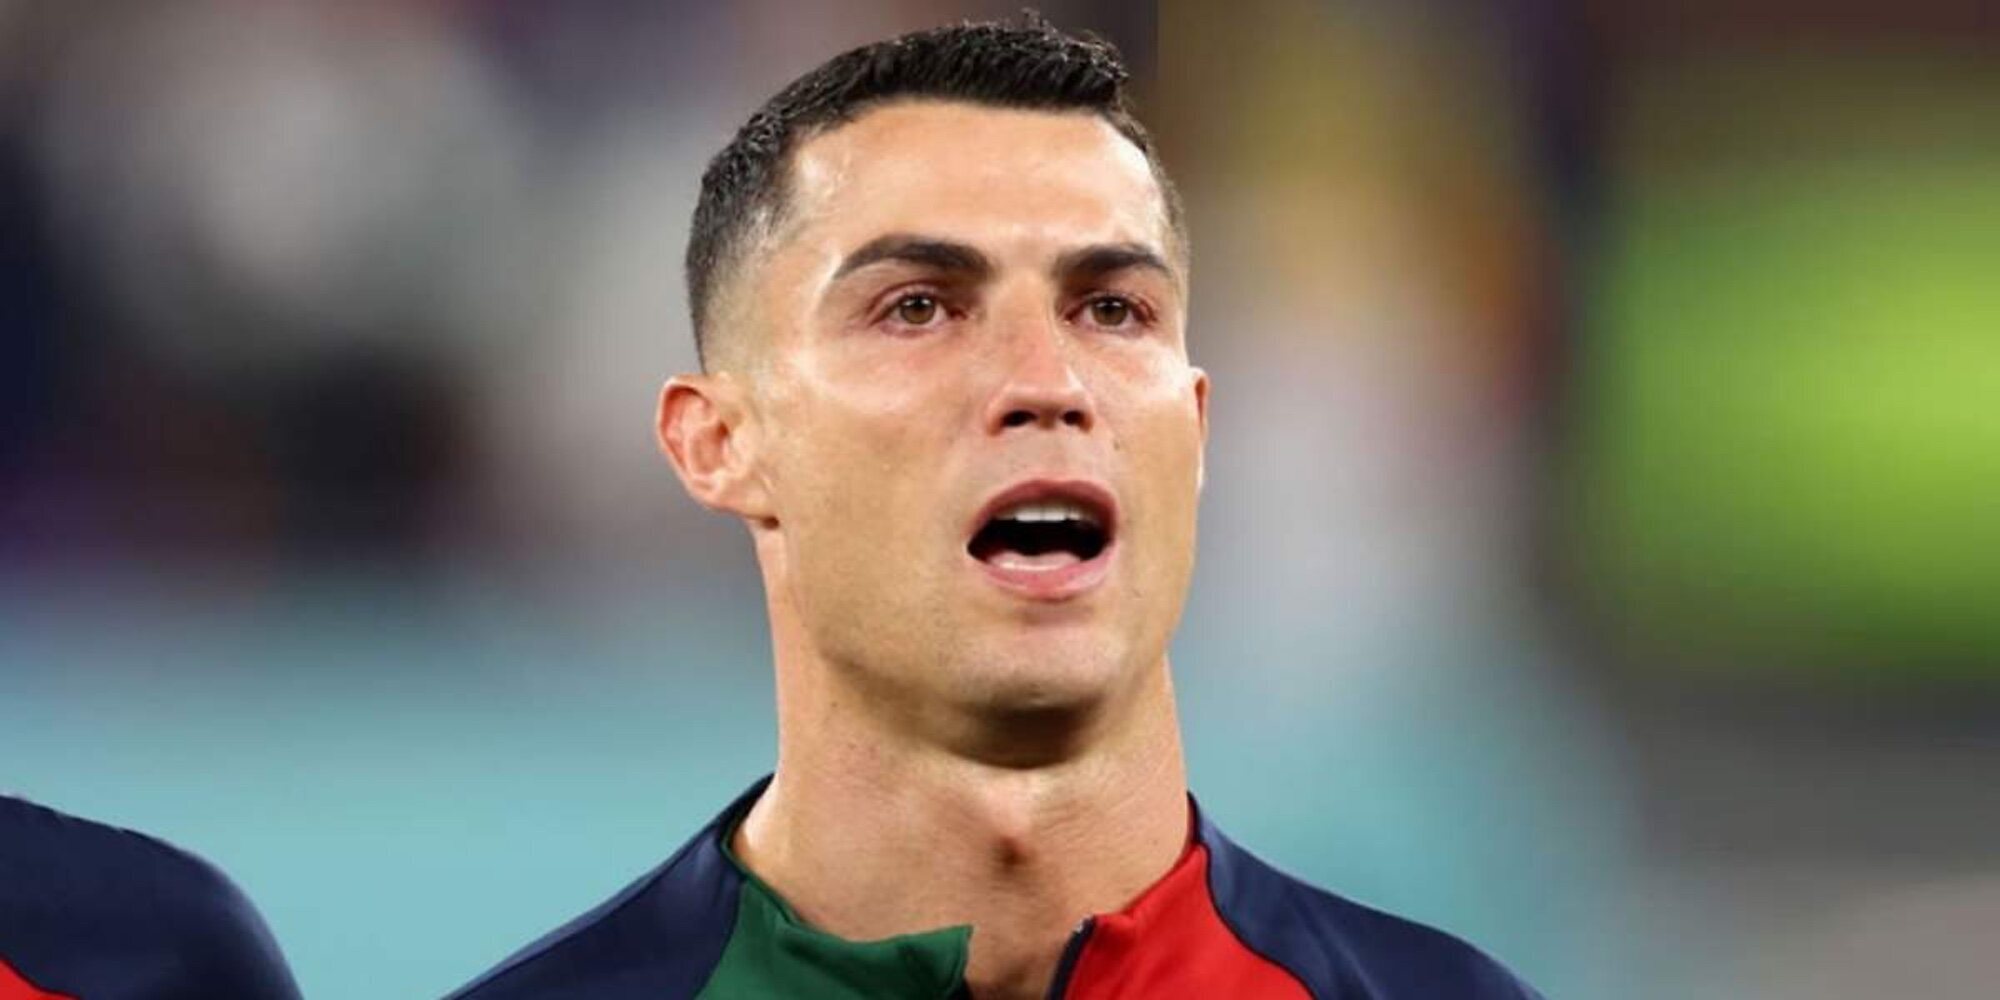 El motivo detrás de las lágrimas de Cristiano Ronaldo en el Mundial de Qatar 2022